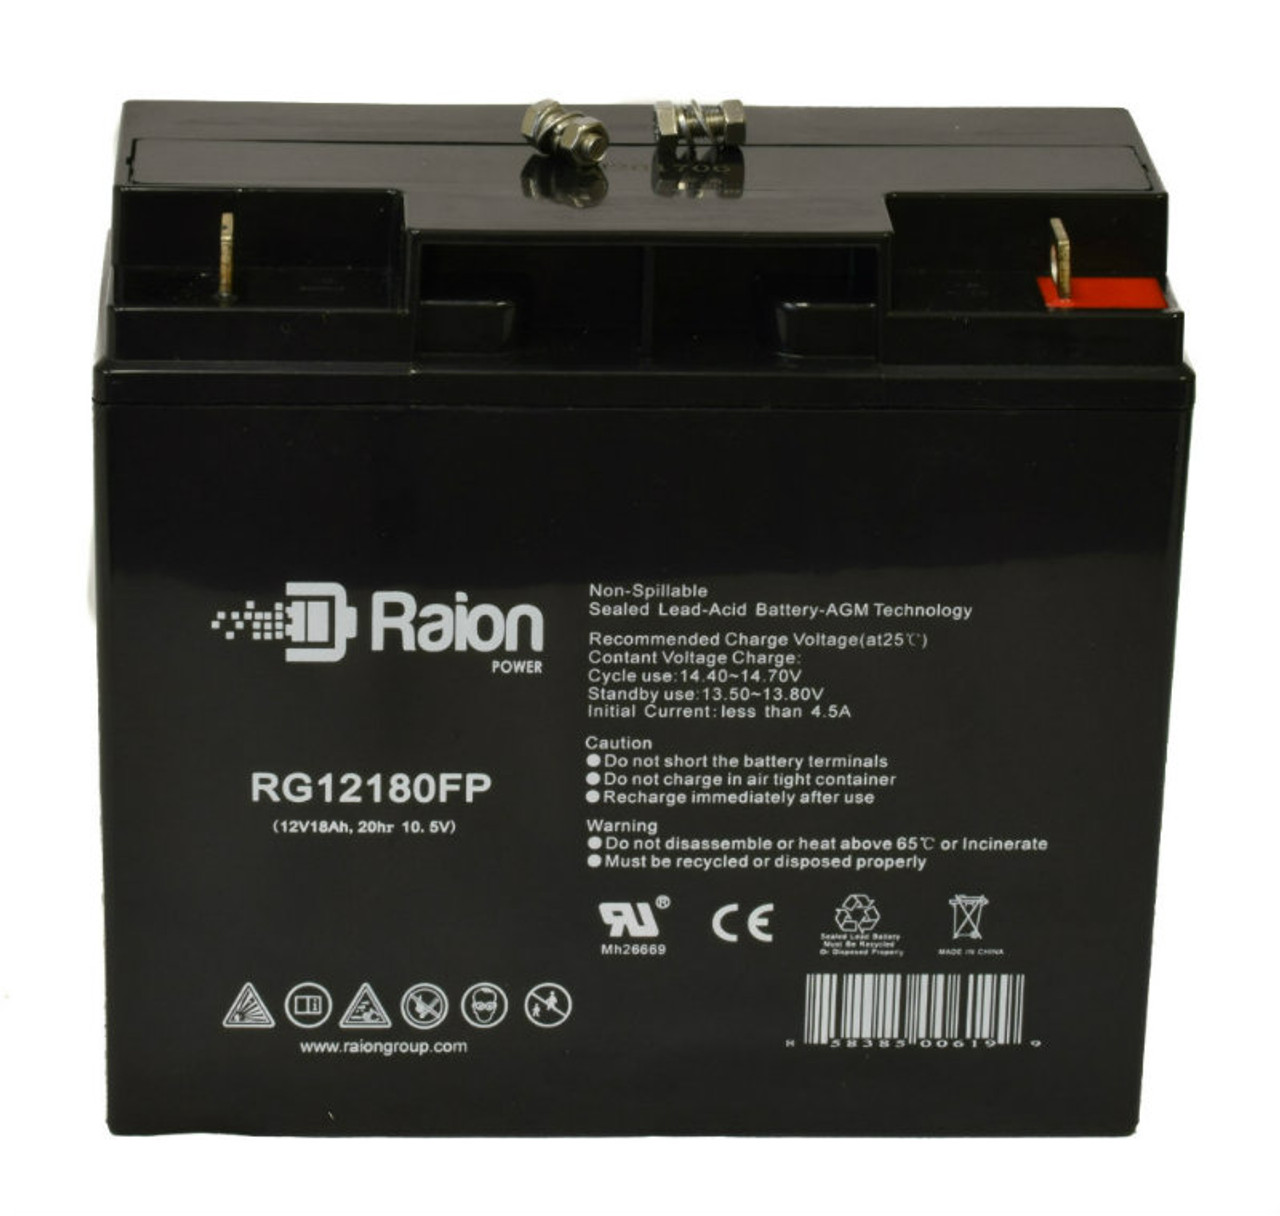 Raion Power RG12180FP 12V 18Ah Lead Acid Battery for Gaston GT12-15